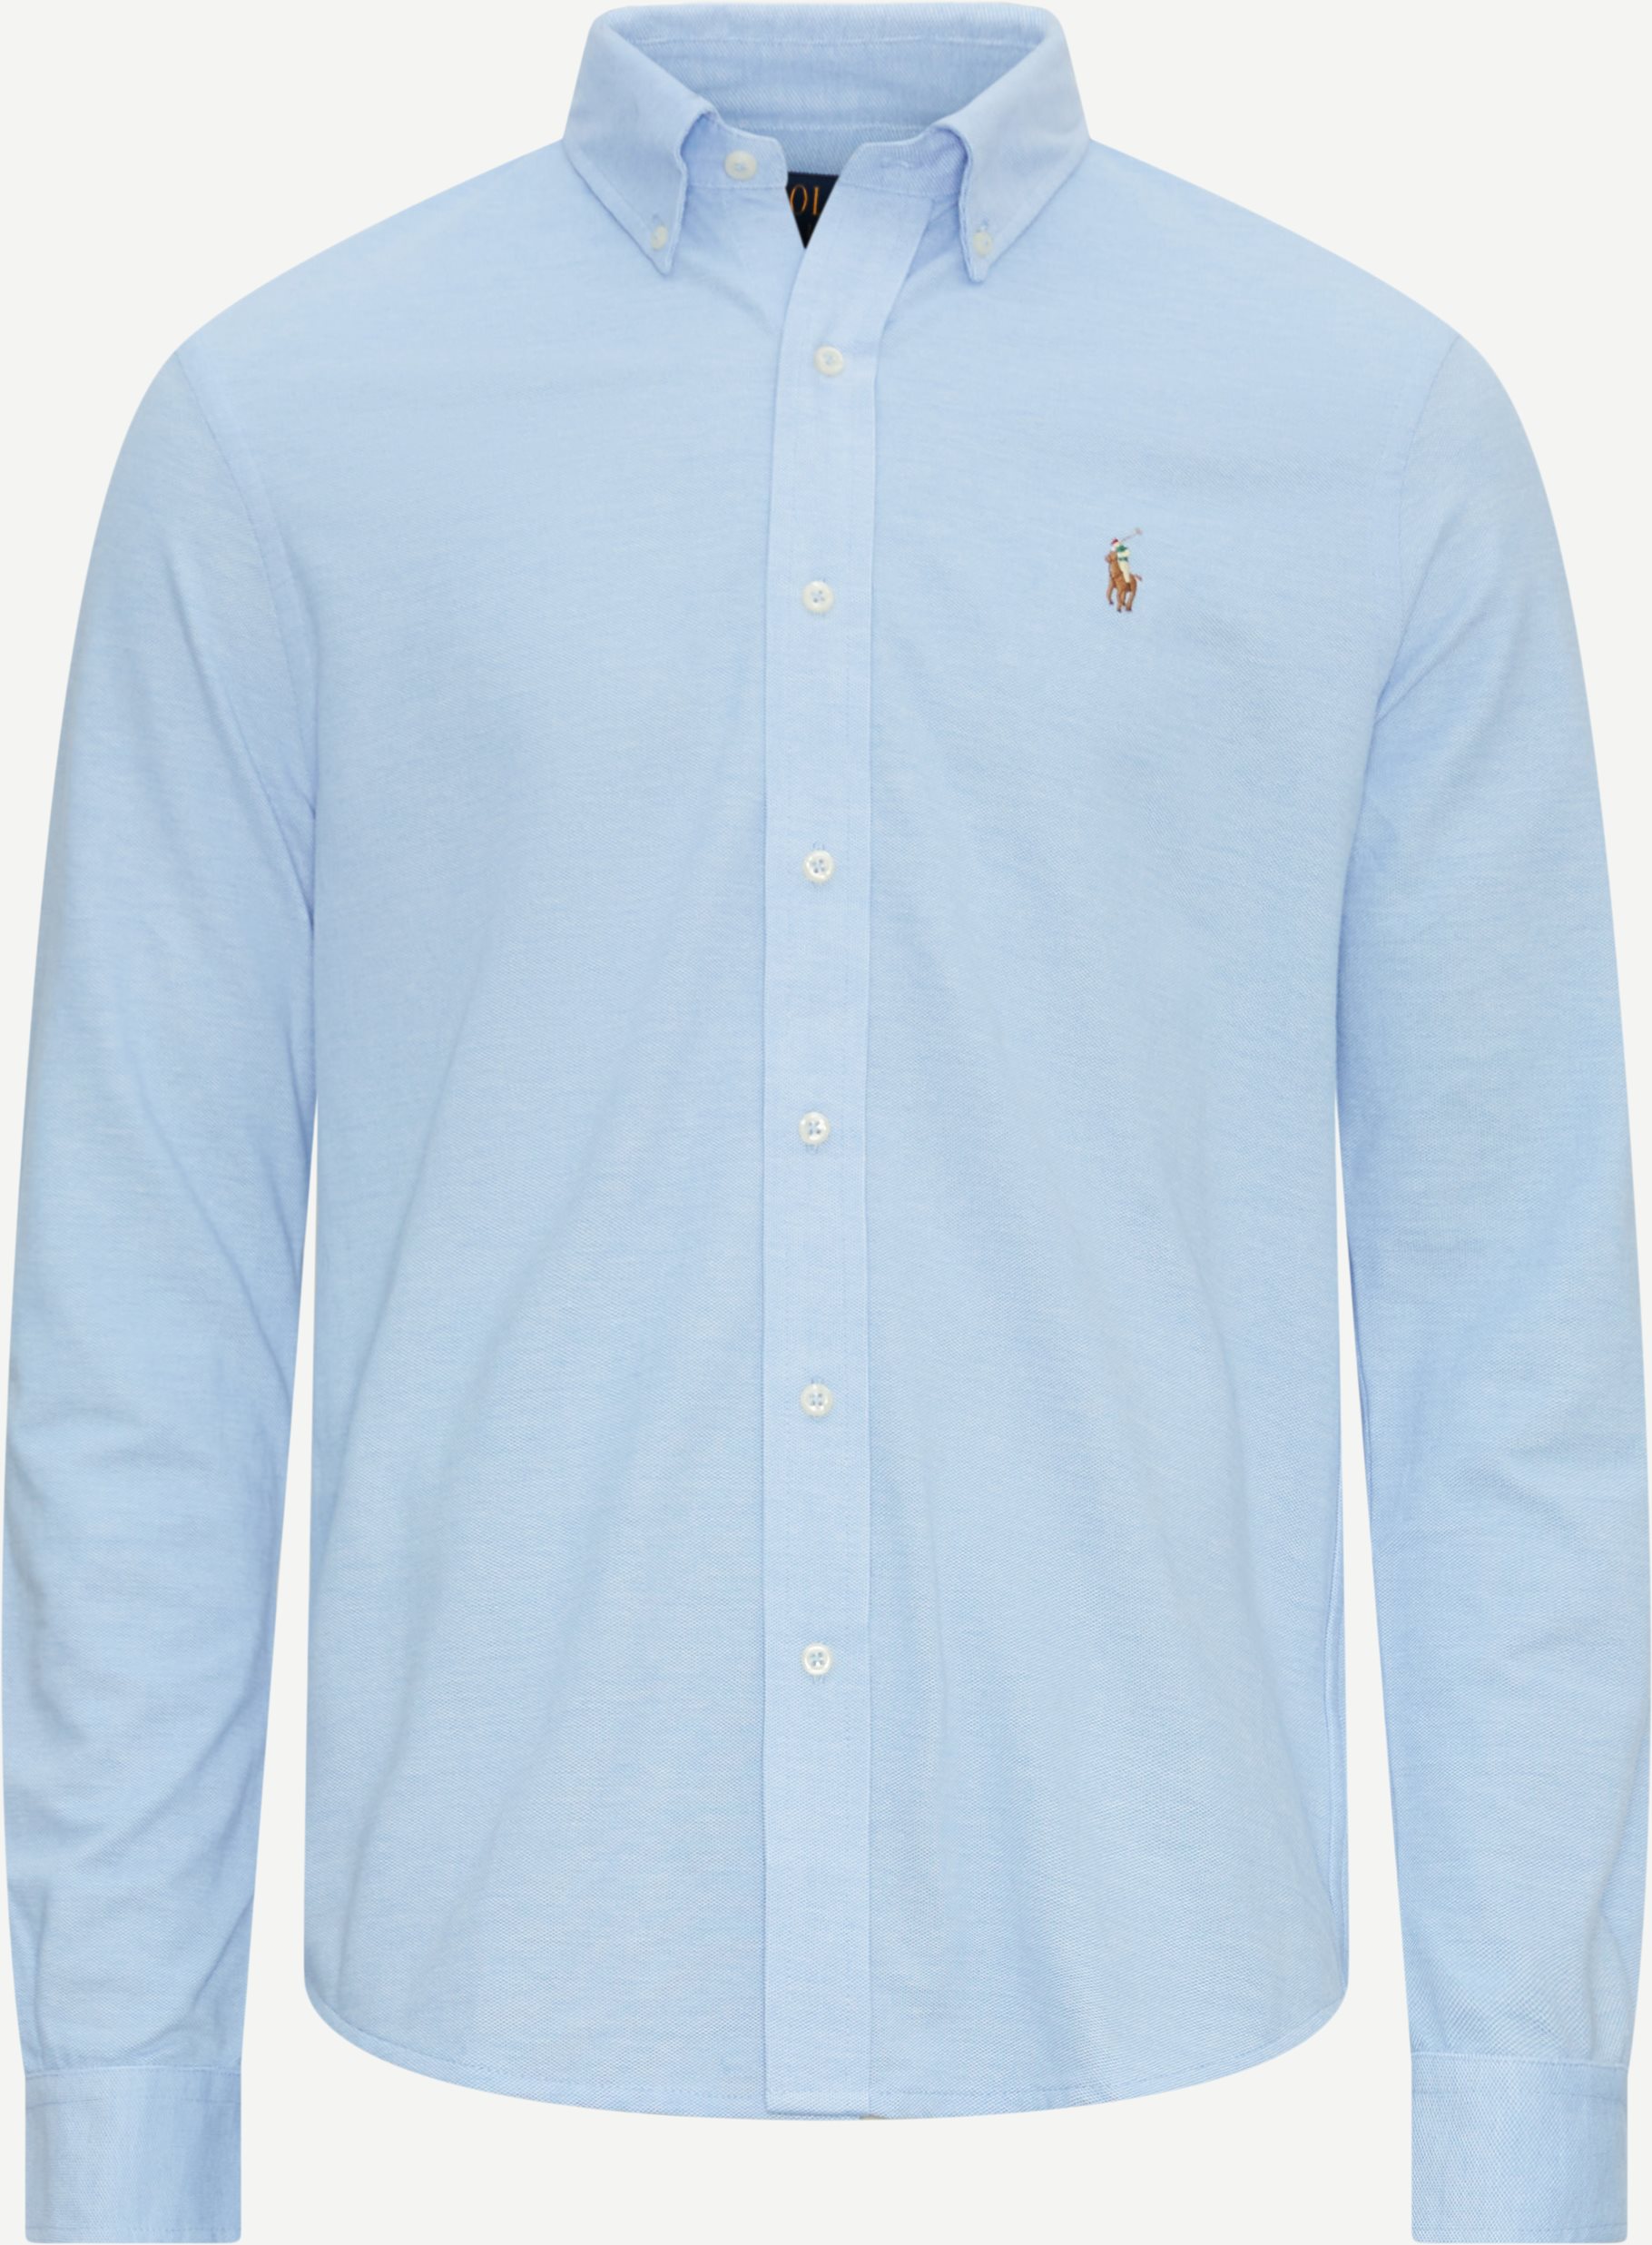 Polo Ralph Lauren Shirts 710932545 Blue